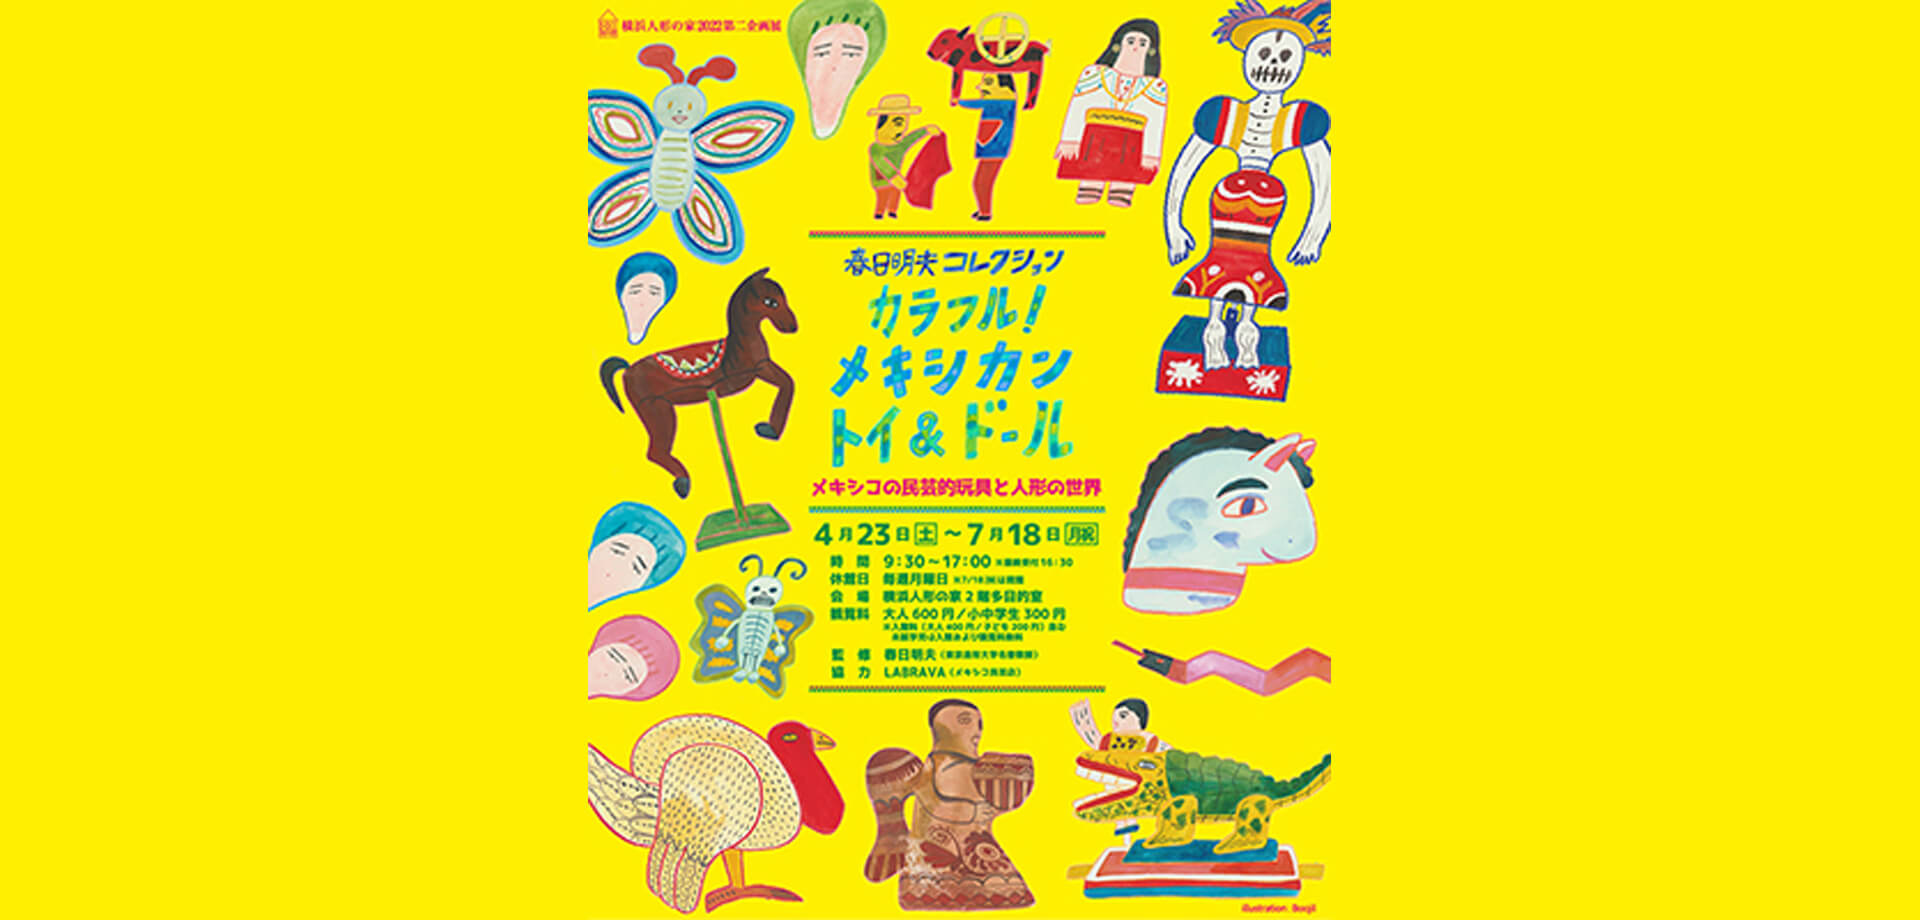 特別イベント 「メキシカン マーケット」 横浜人形の家